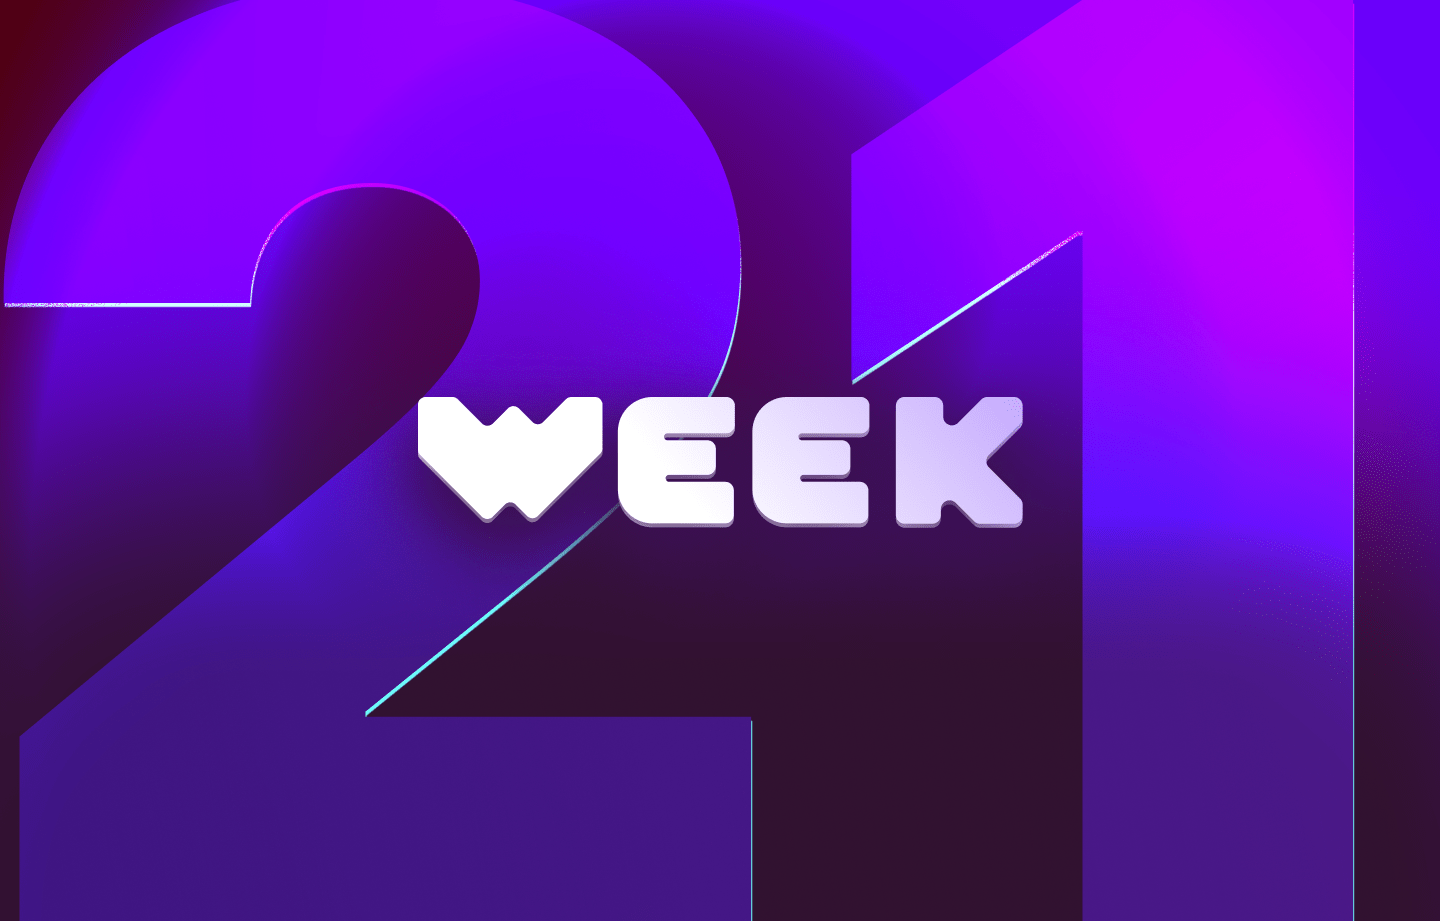 This week in web3 #21